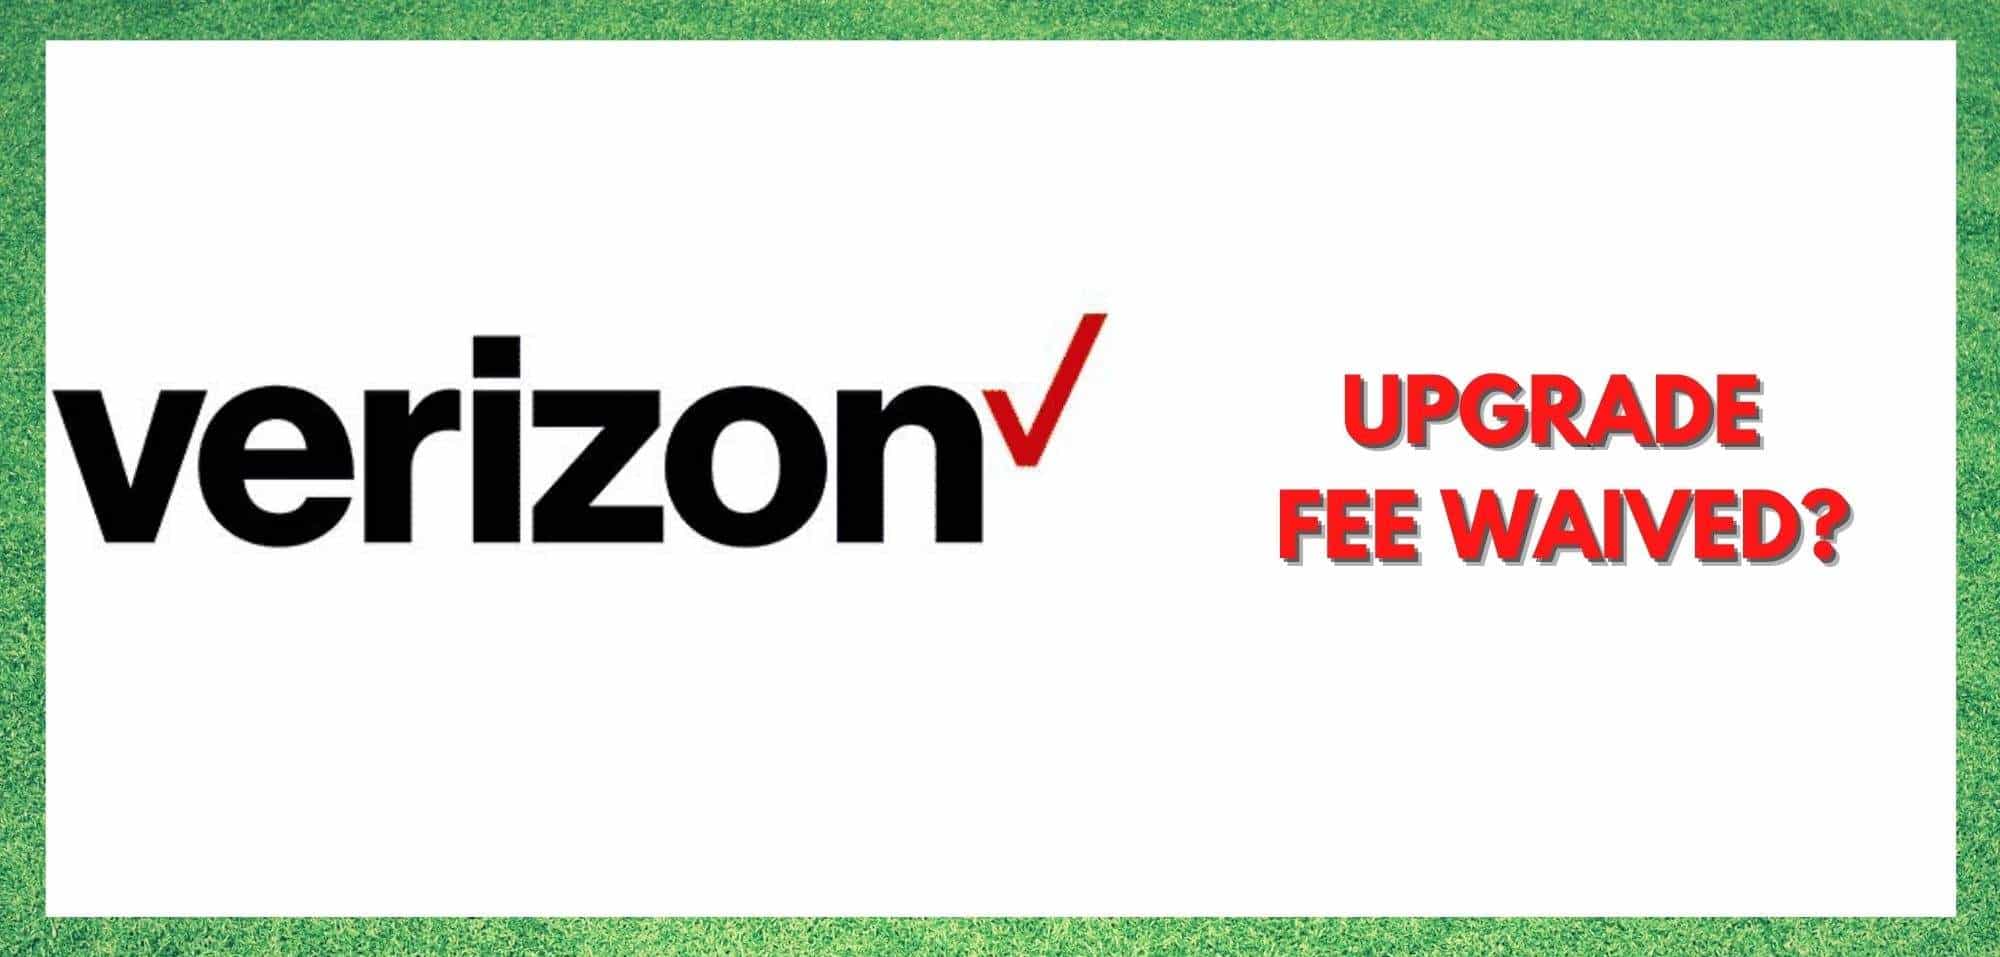 Kunt u de Verizon Upgrade Fee kwijtgescholden krijgen?